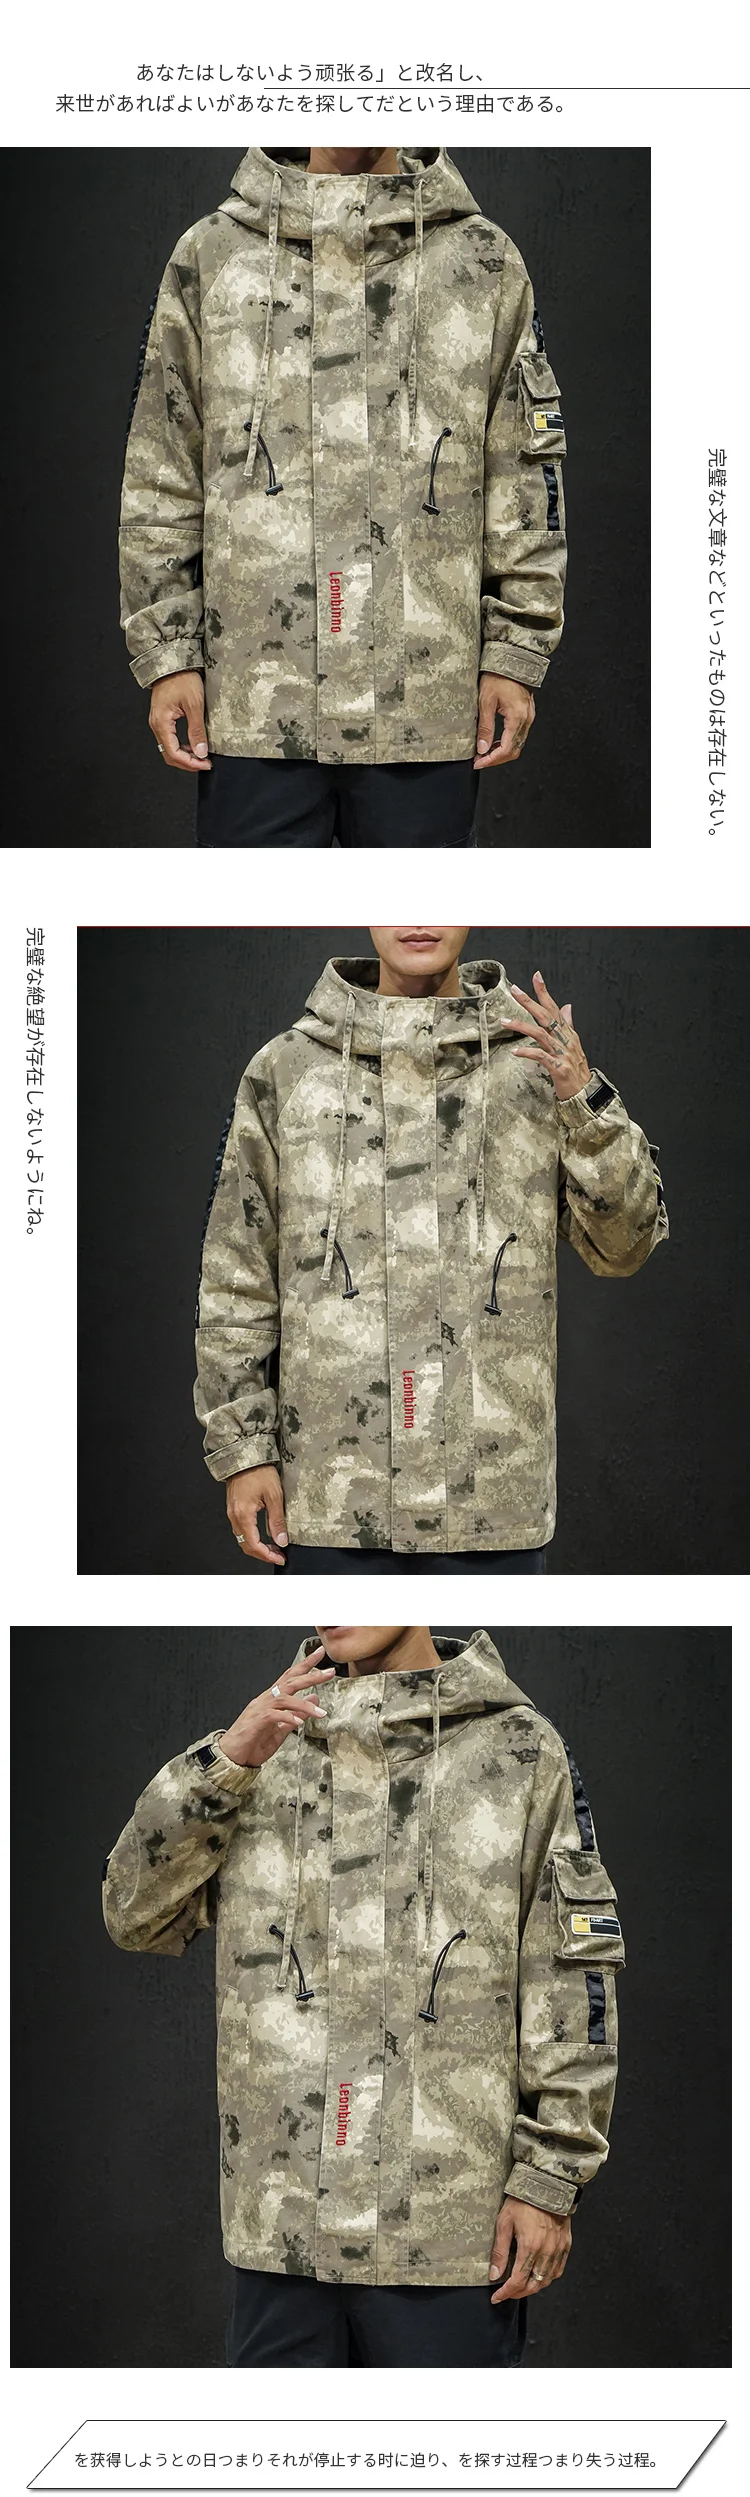 Модная камуфляжная куртка мужская 2019 комбинезоны Японская уличная Толстовка Военный стиль пальто тактическая куртка хип хоп Корейская